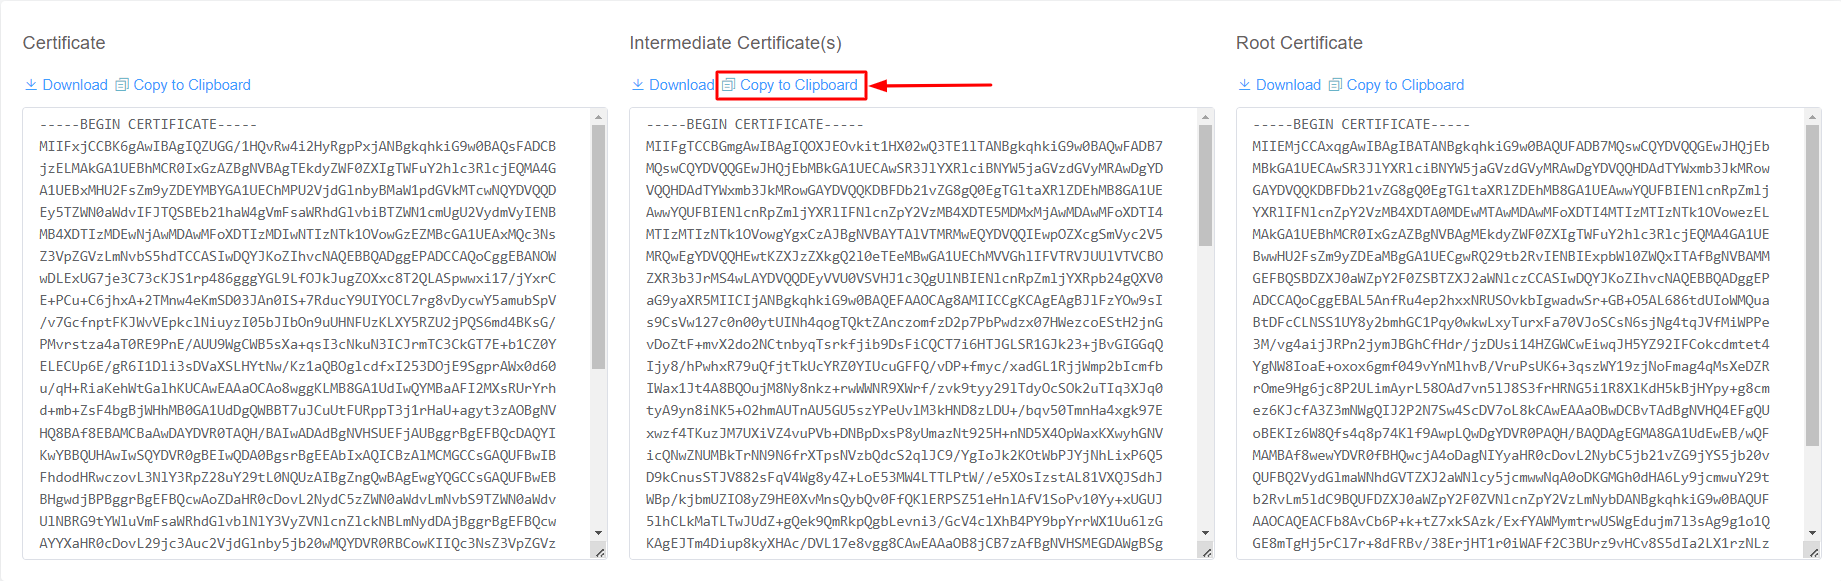 Copy Intermediate SSL Certificate